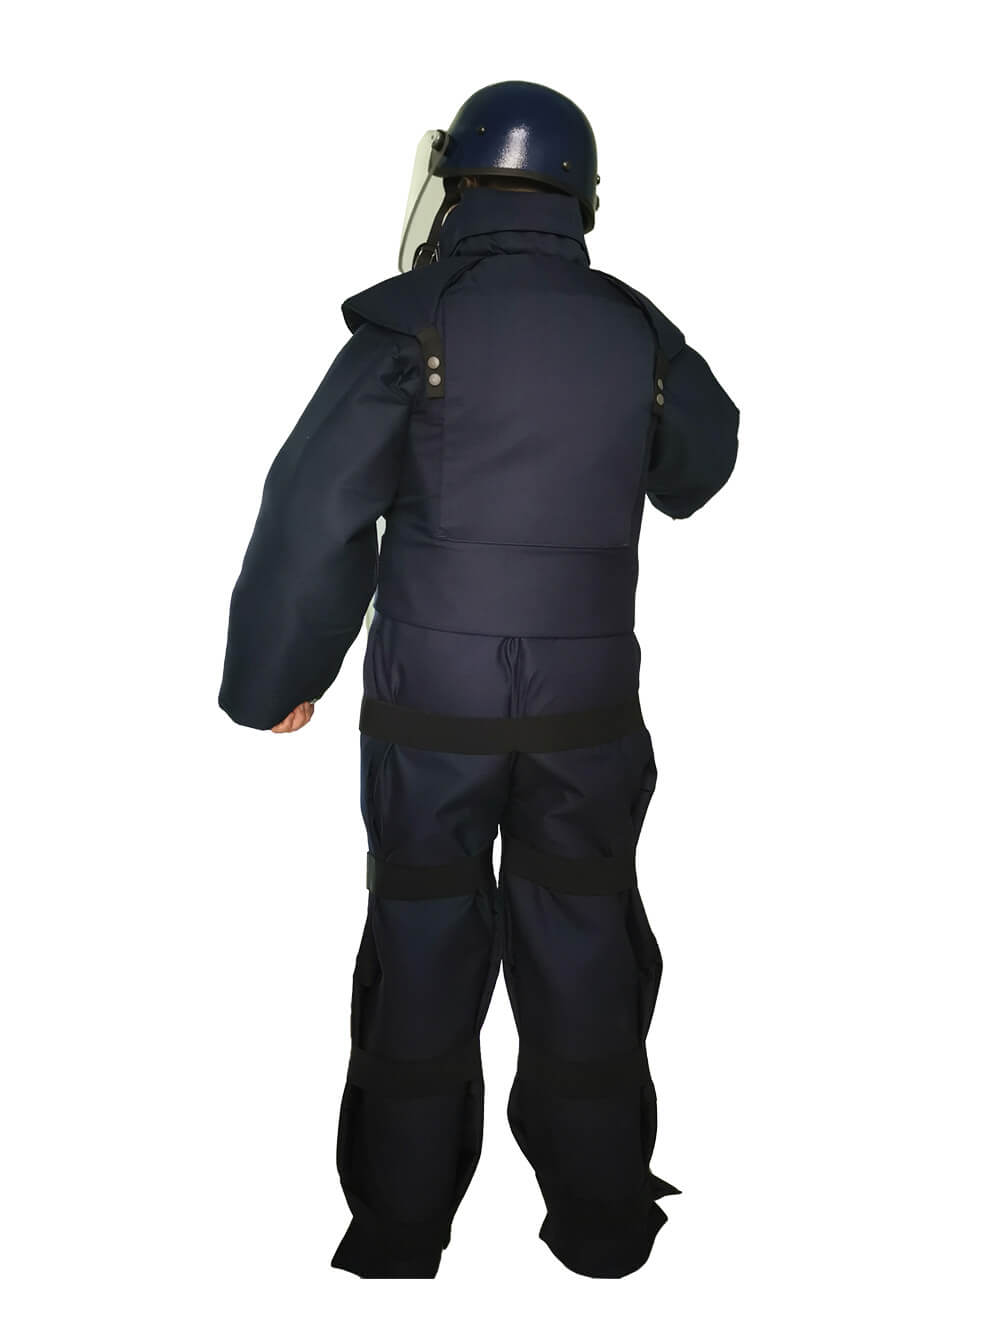 SE153 EOD suit